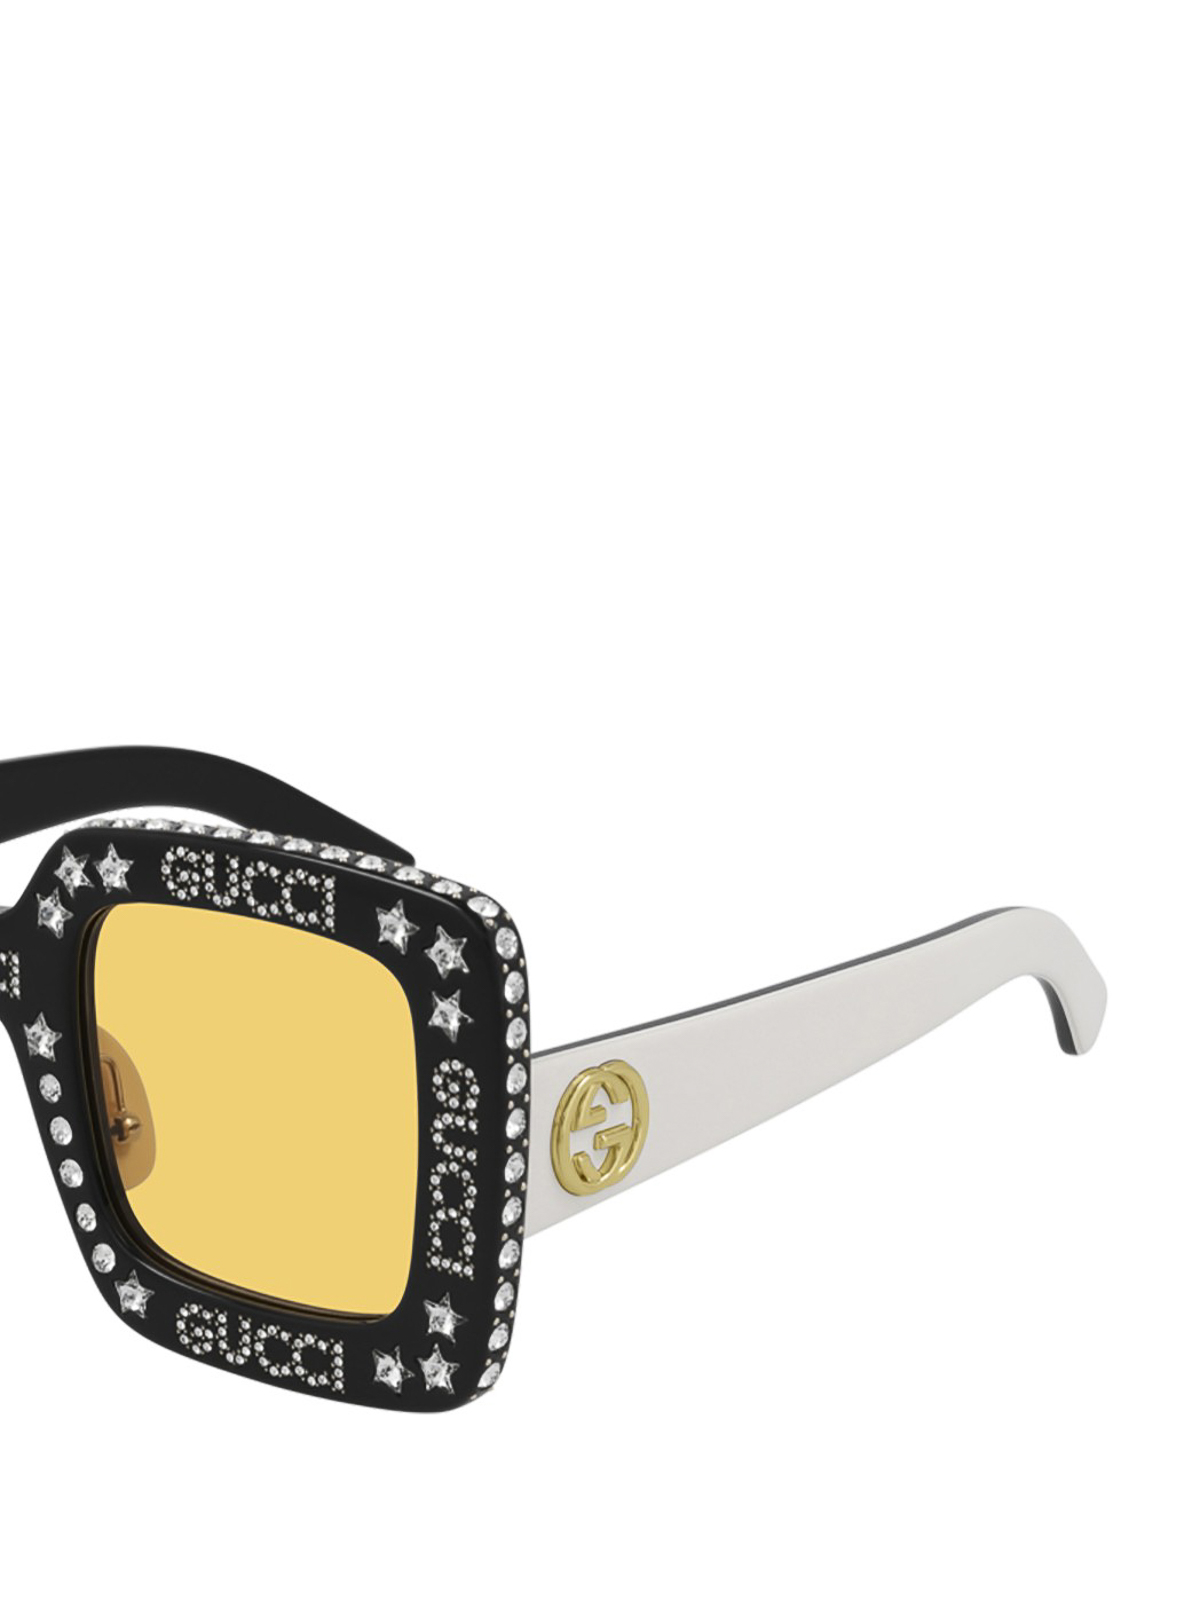 サングラス Gucci - サングラス - マルチカラー - GG0780S008